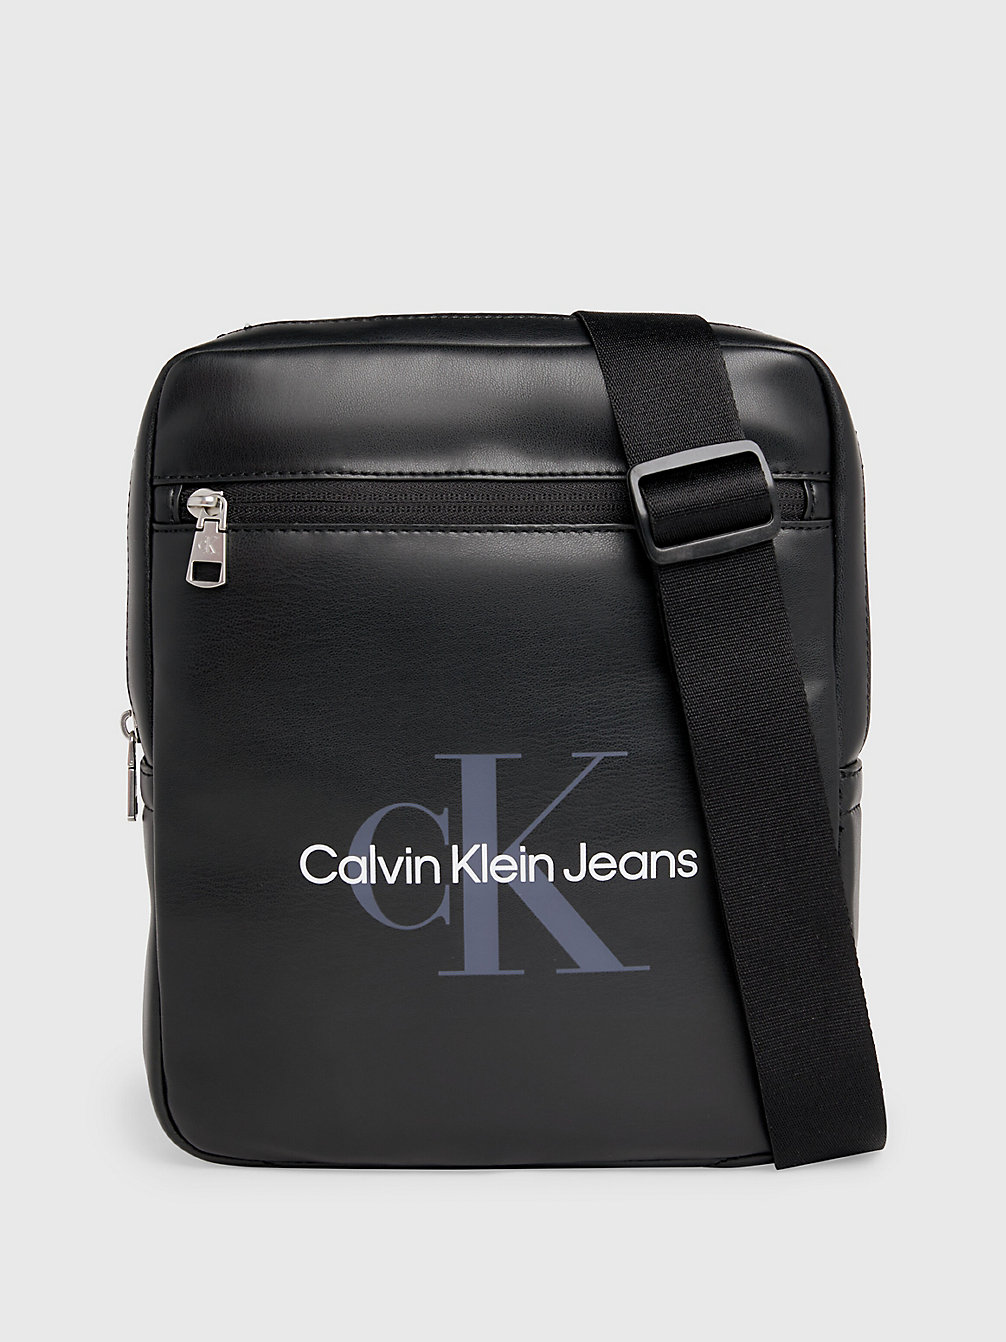 BLACK > Crossover > undefined heren - Calvin Klein